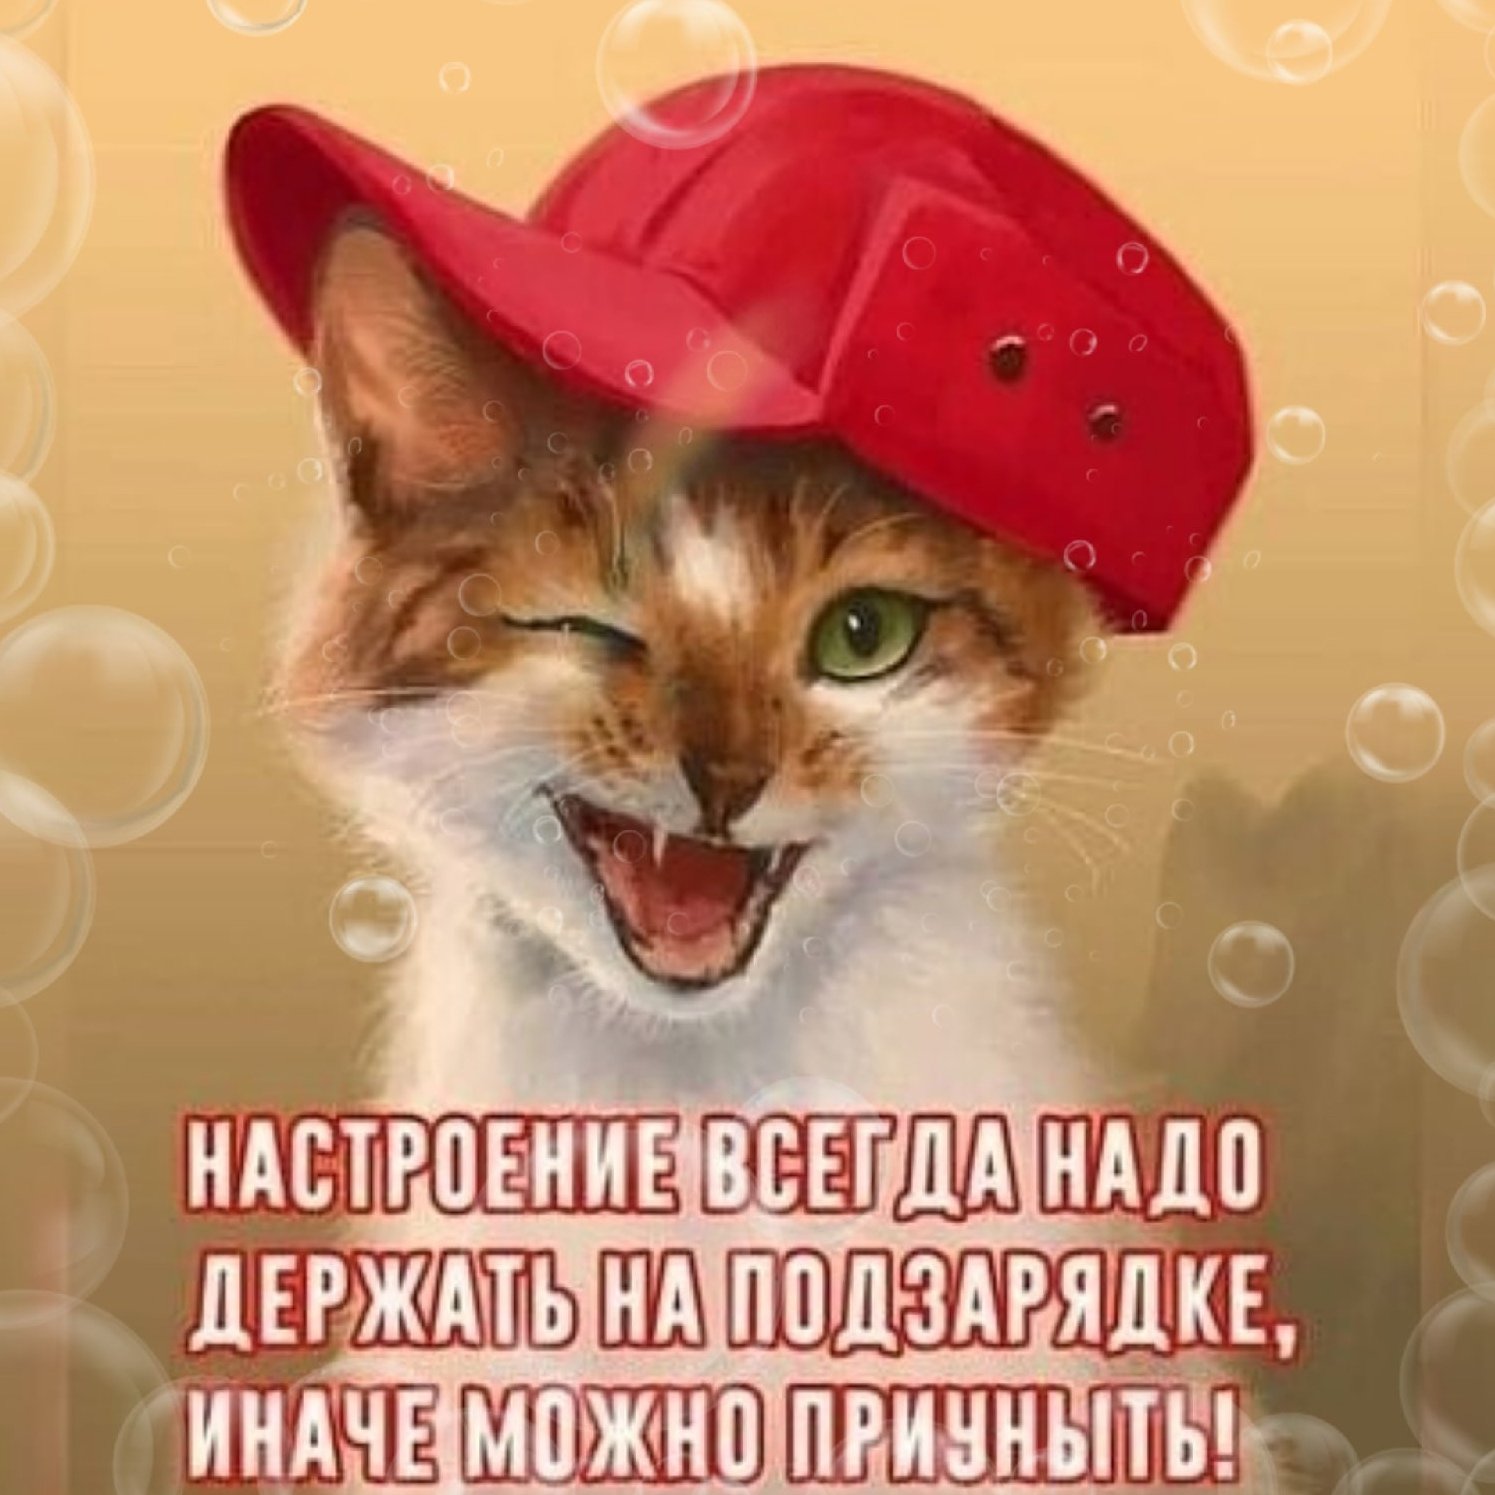 Какой большой привет. Кот в кепке. Приветик картинки прикольные. Рыжий кот в кепке. Смешные картинки приветствия.